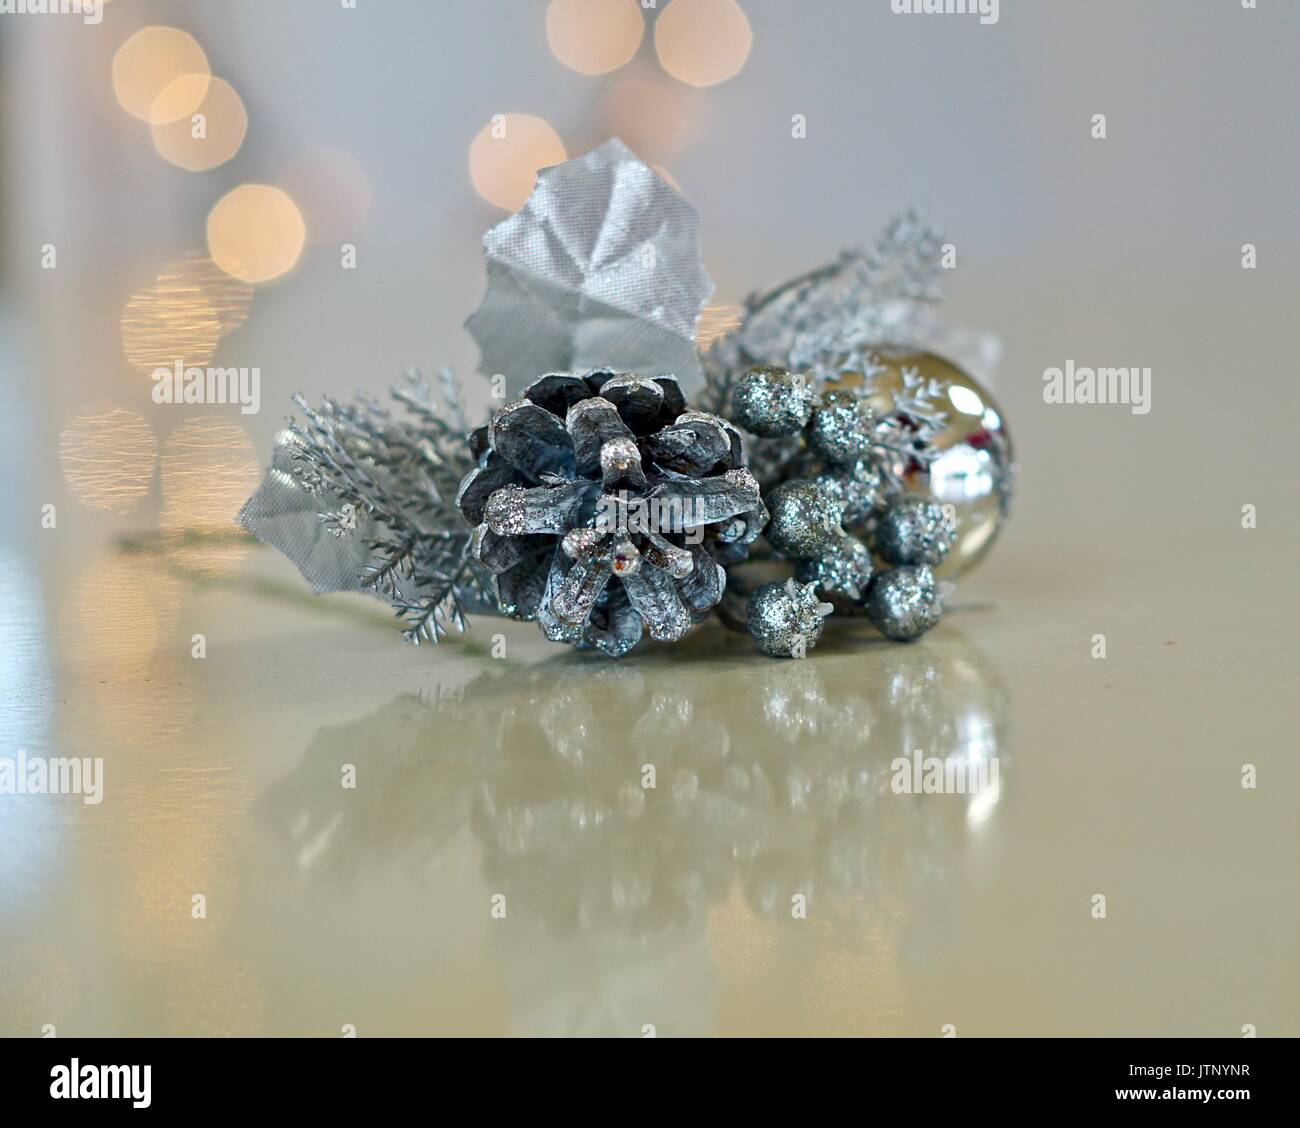 Noël vintage argent corsage avec lumières blanches floues en arrière-plan Banque D'Images